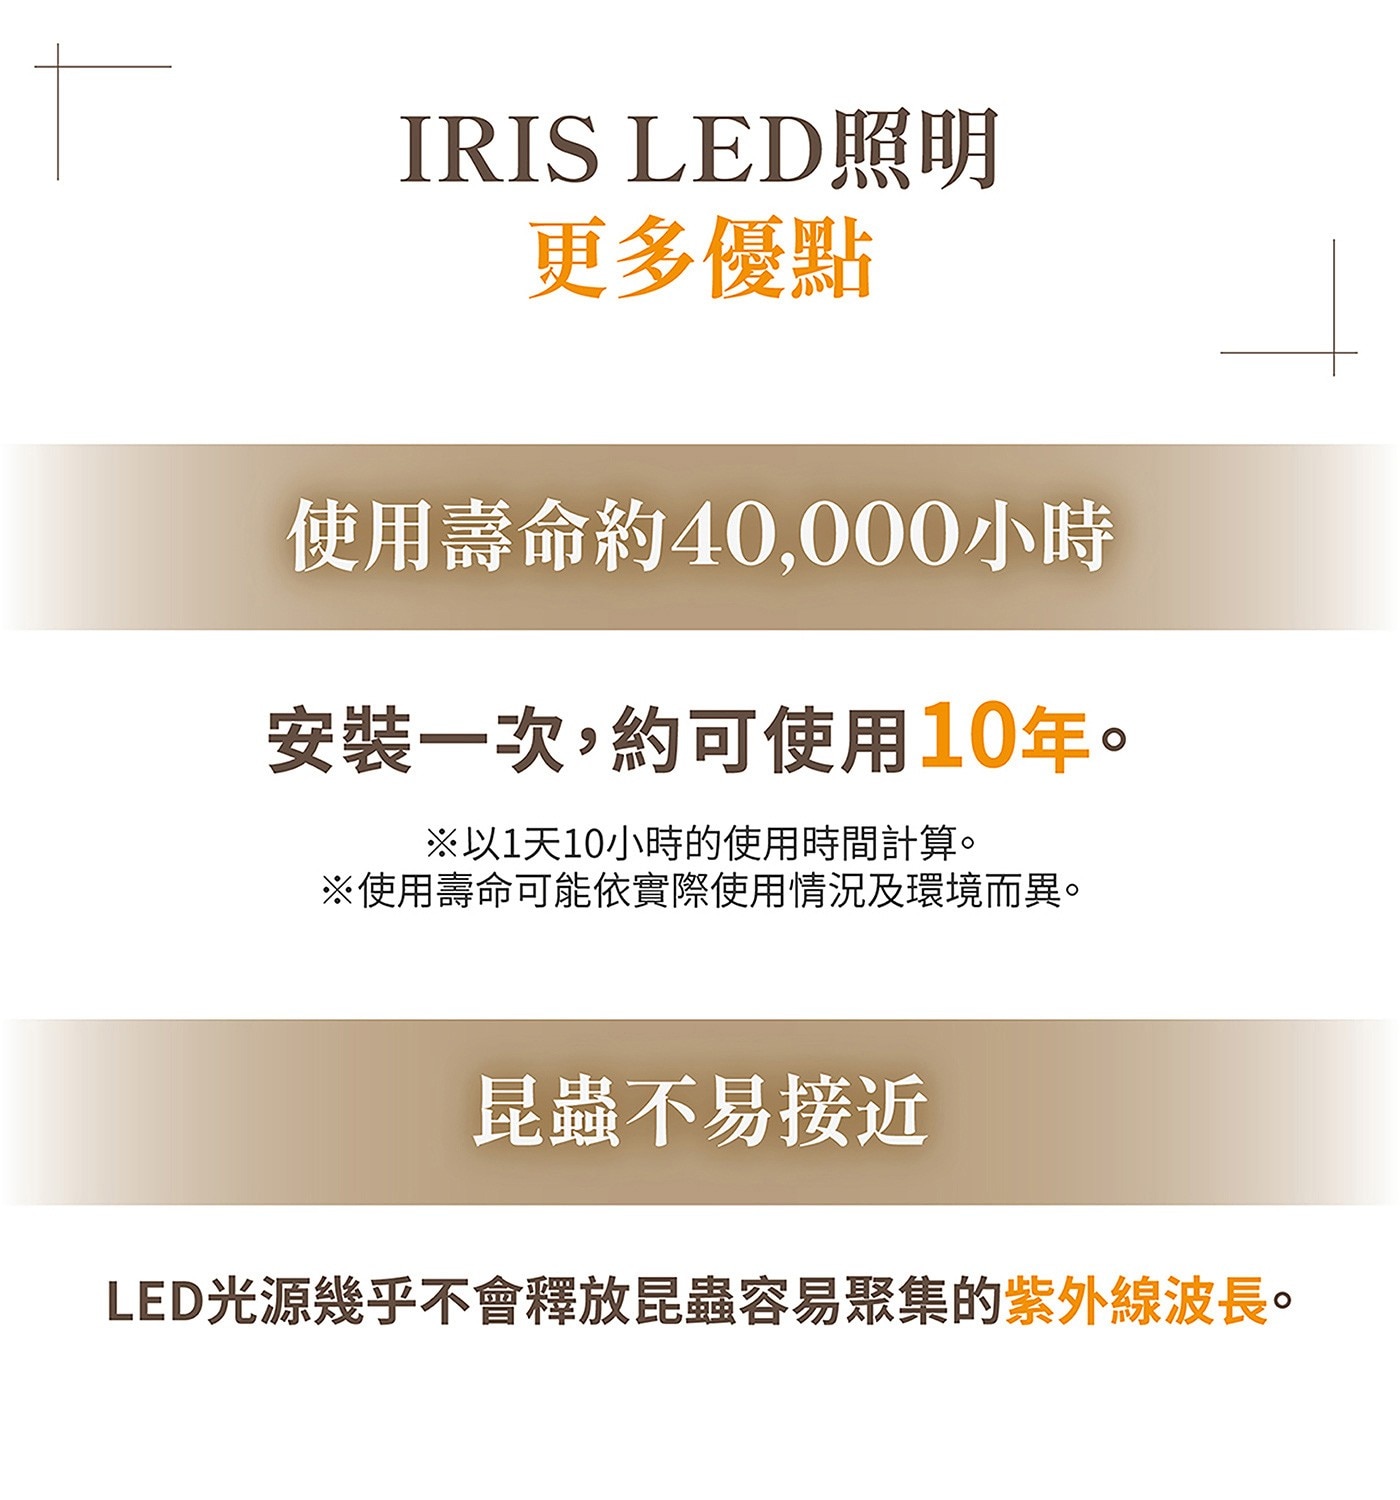 IRIS OHYAMA LED 多功能金屬邊吸頂燈，燈具本體薄功能多、簡約的風格設計適合各種空間的LED吸頂燈，能夠調整替，依造場景輕鬆打造喜愛氛圍。